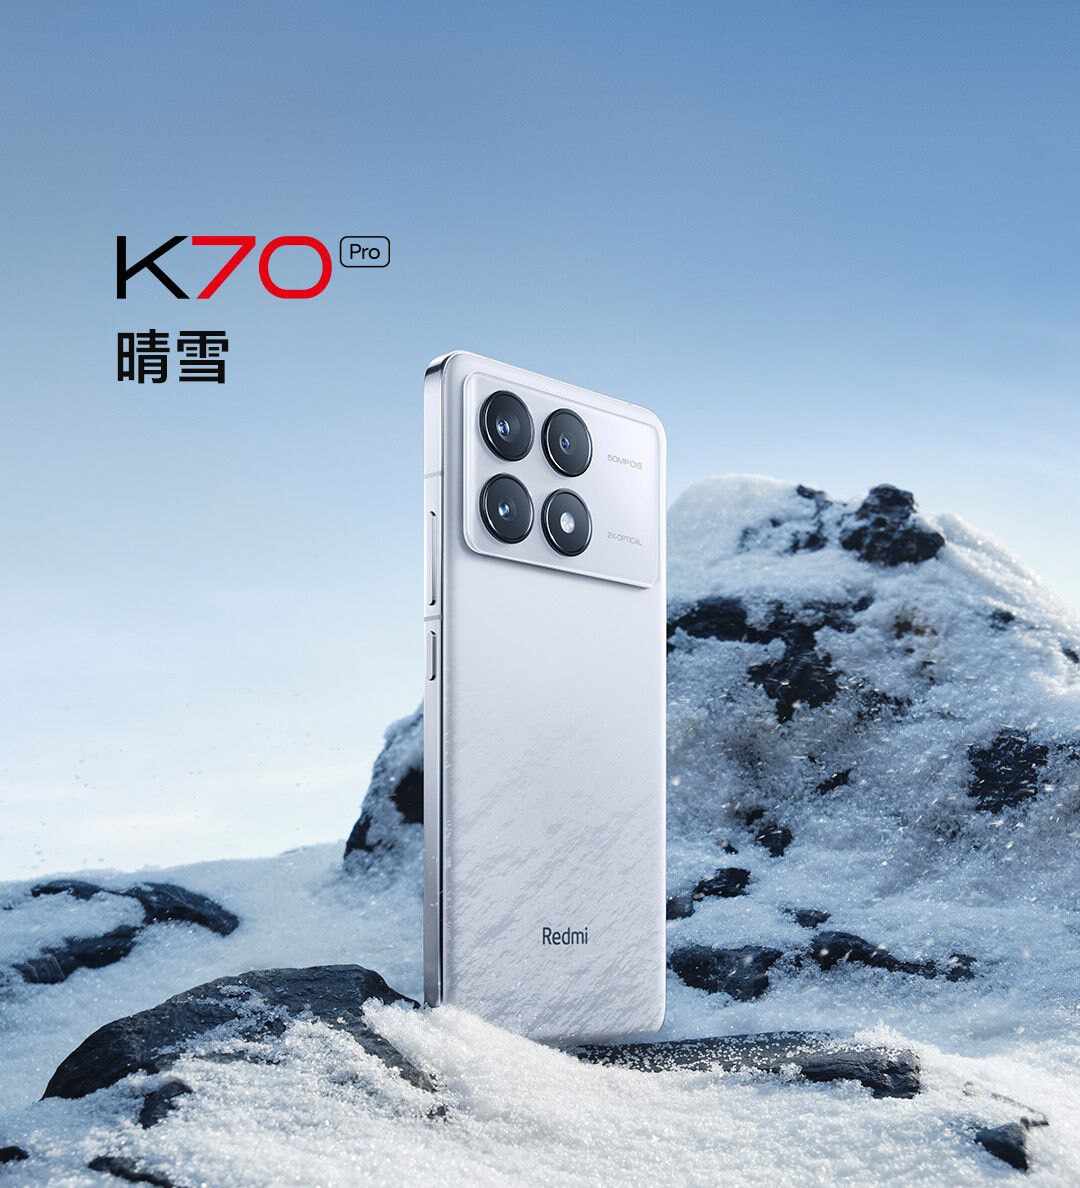 Xiaomi Redmi K70 Pro global availability 